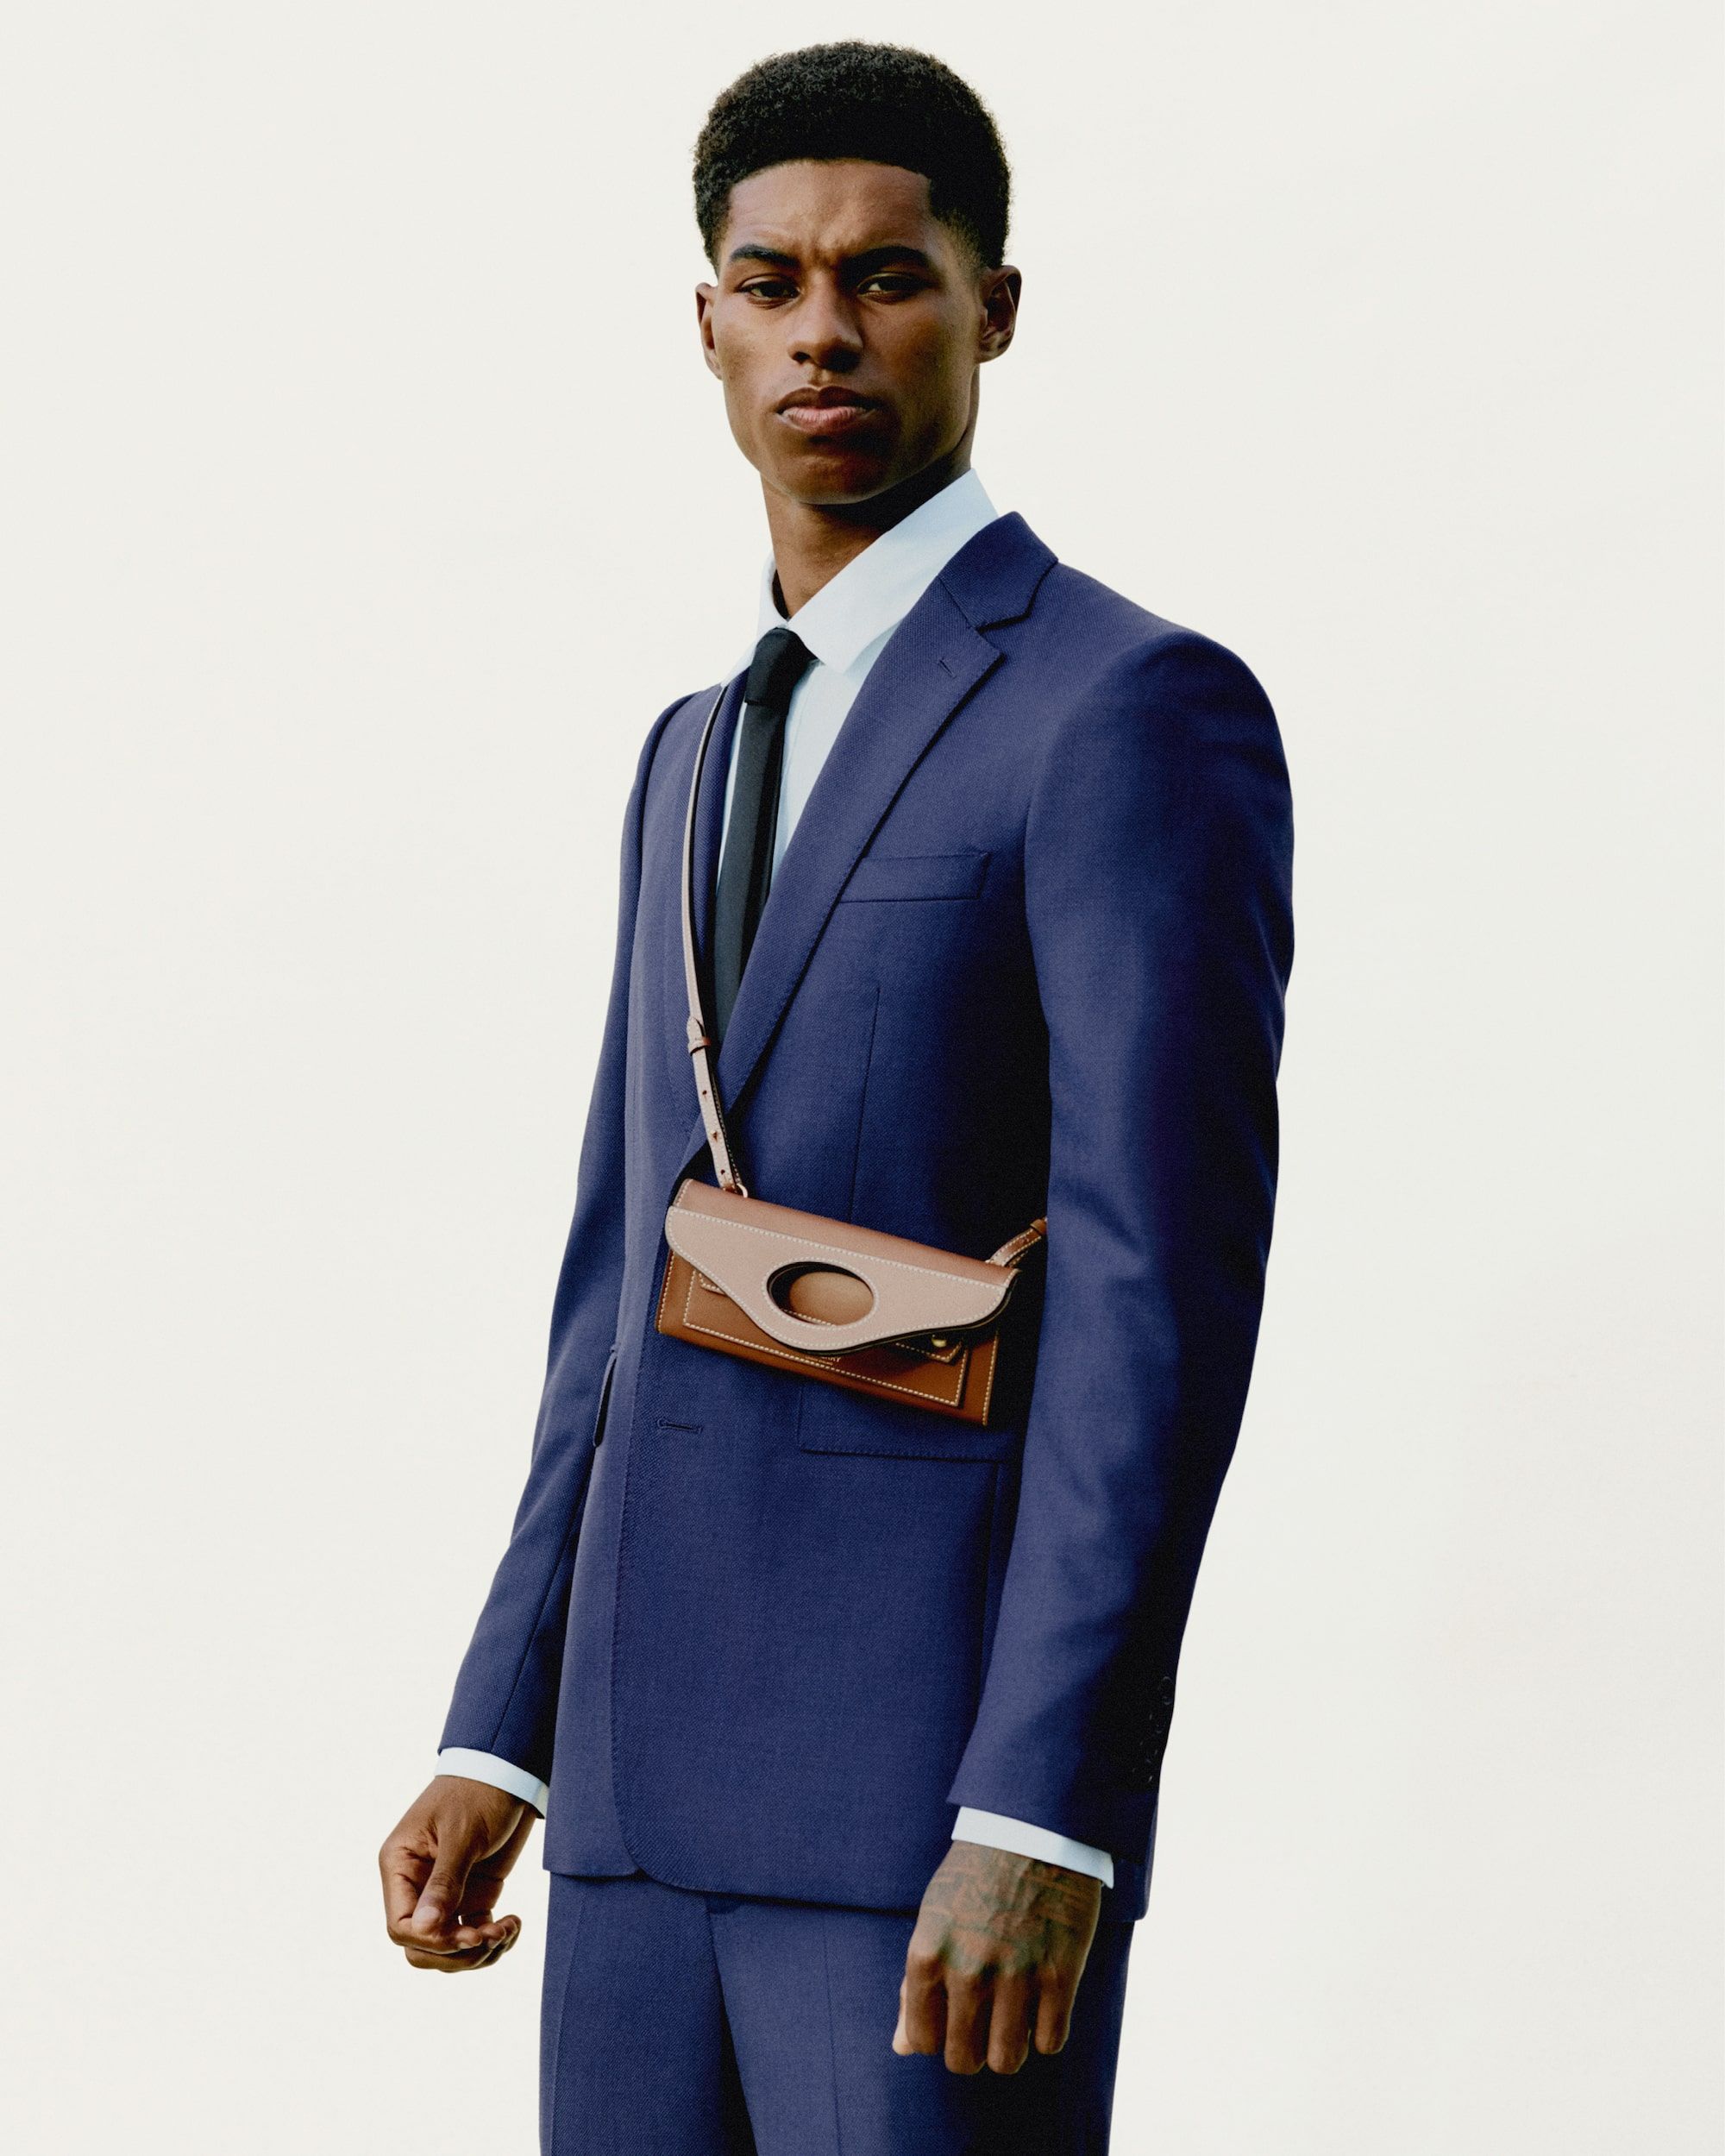 Marcus Rashford Louis Vuitton Jacket